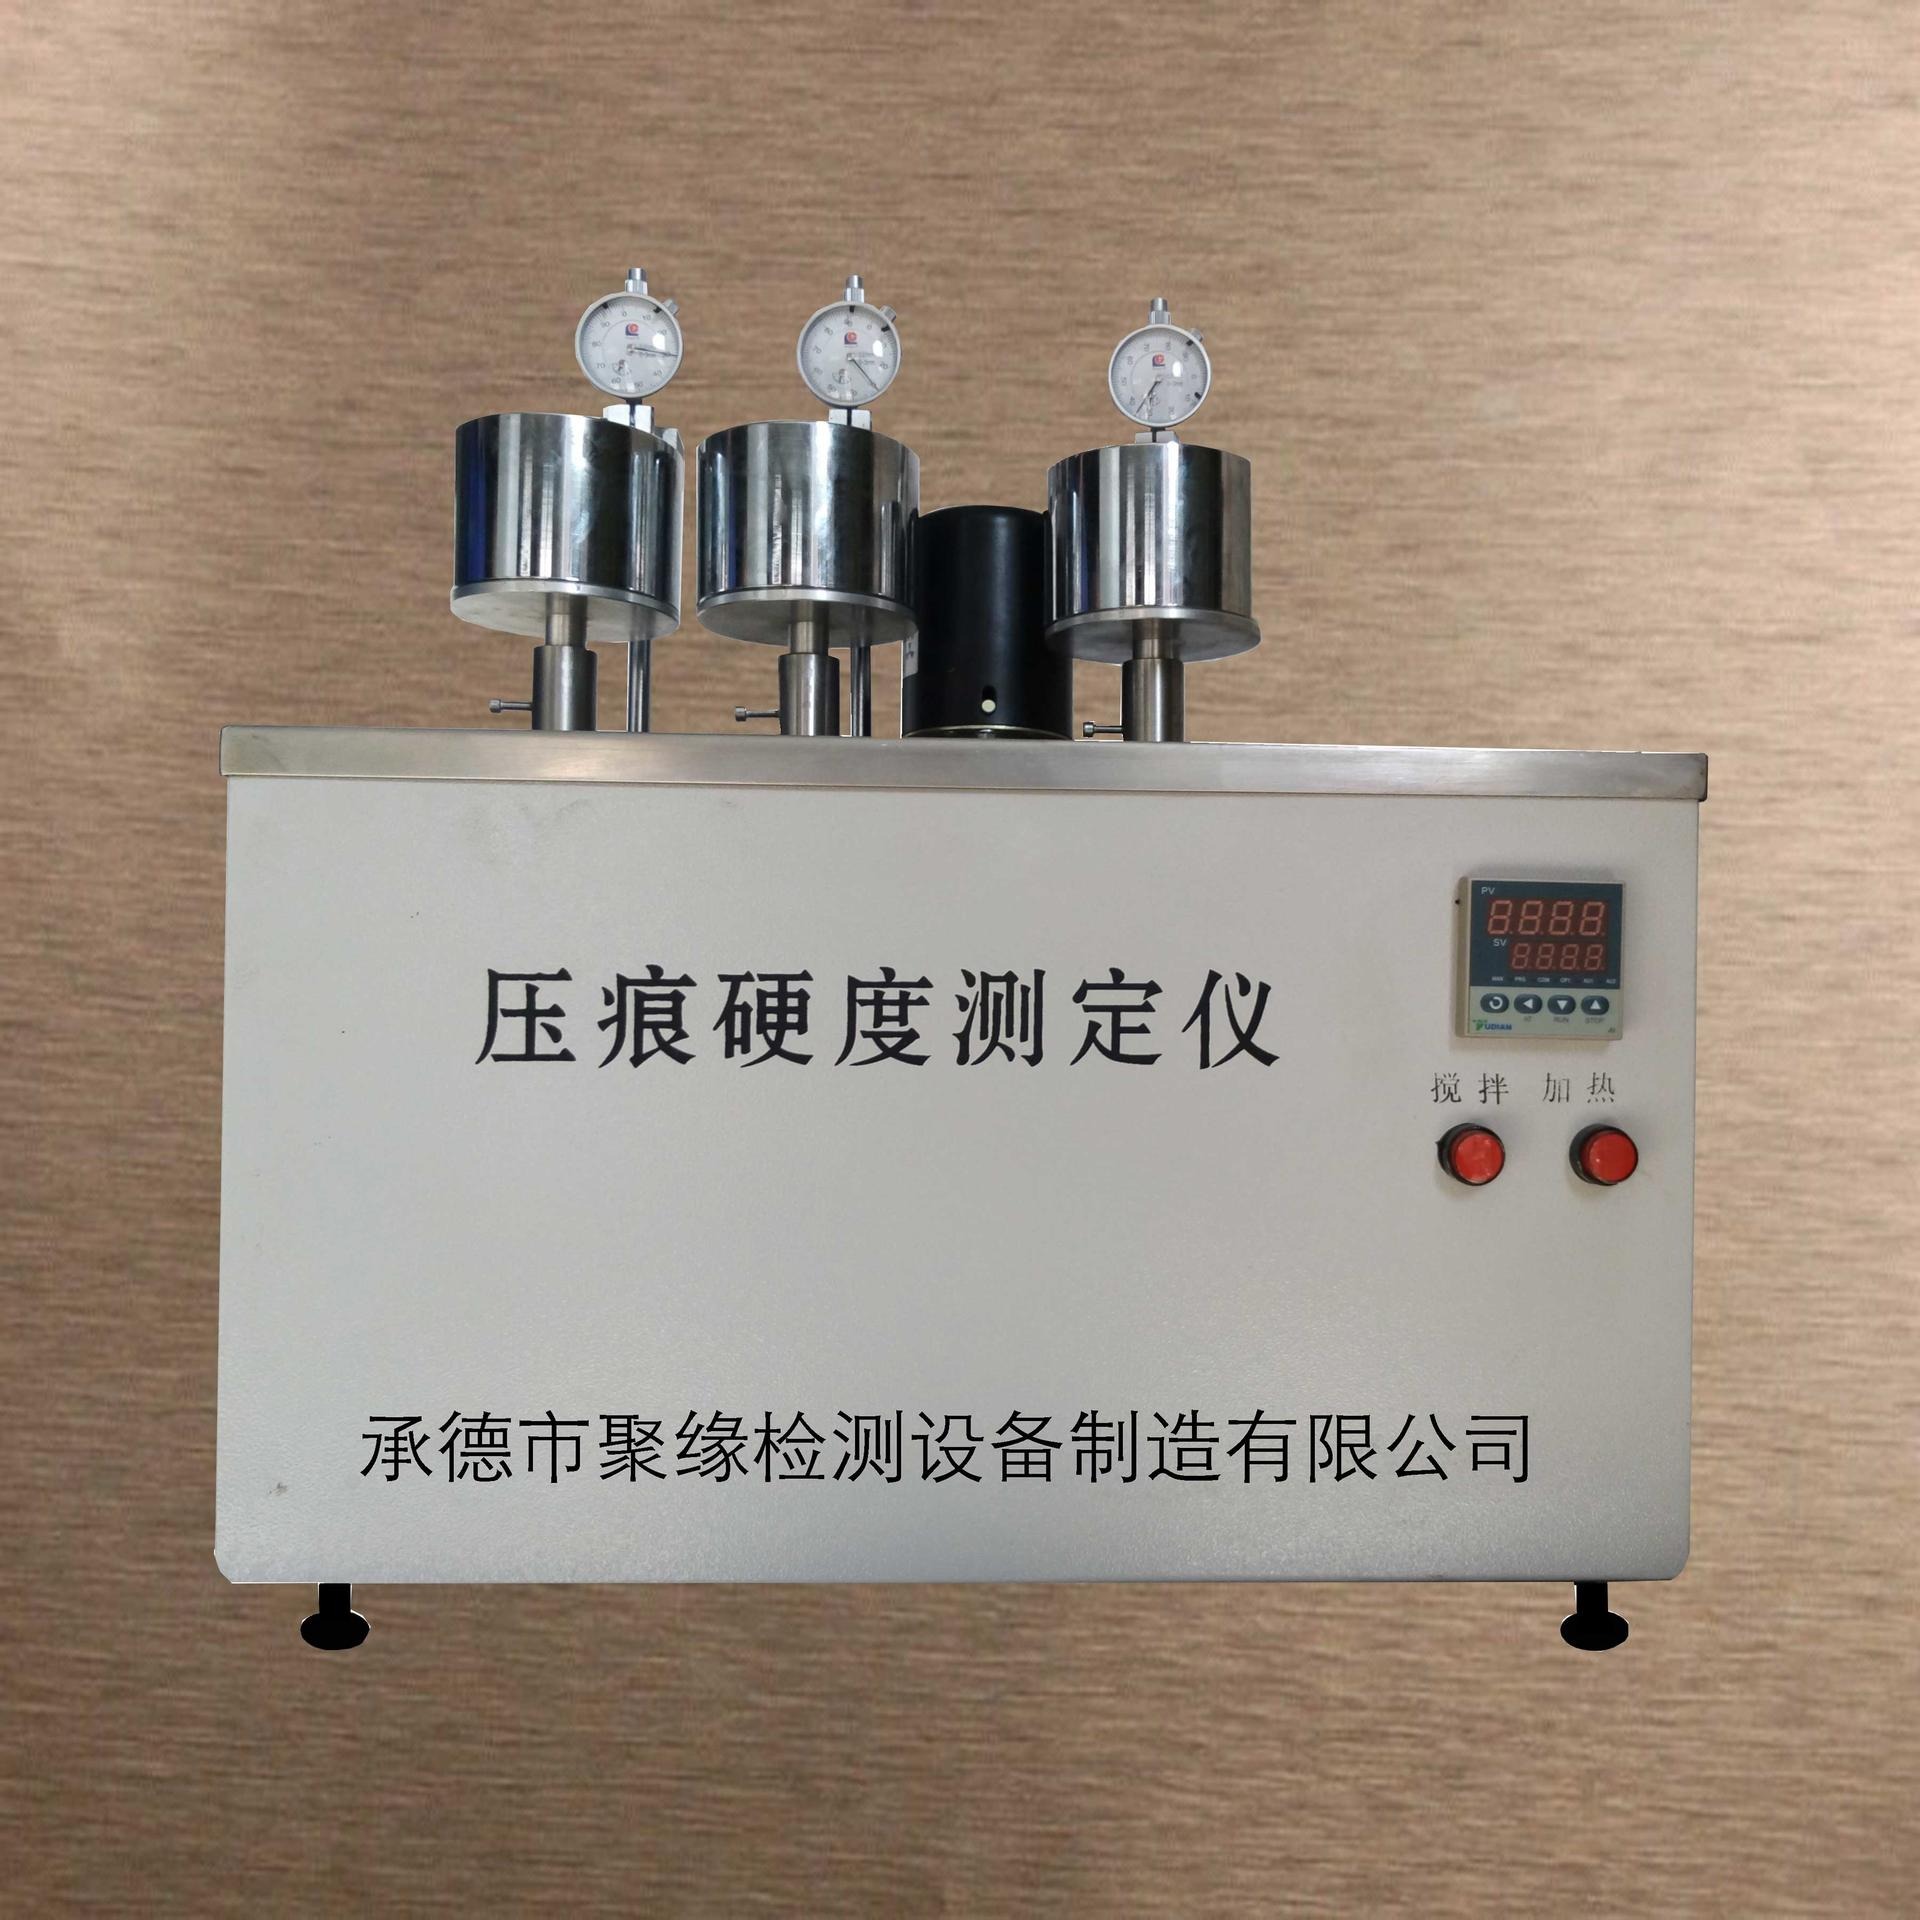 承德聚缘 XWK70 塑料压痕硬度测定仪  压痕测试仪  压痕硬度仪  承德试验机  热变形测定仪